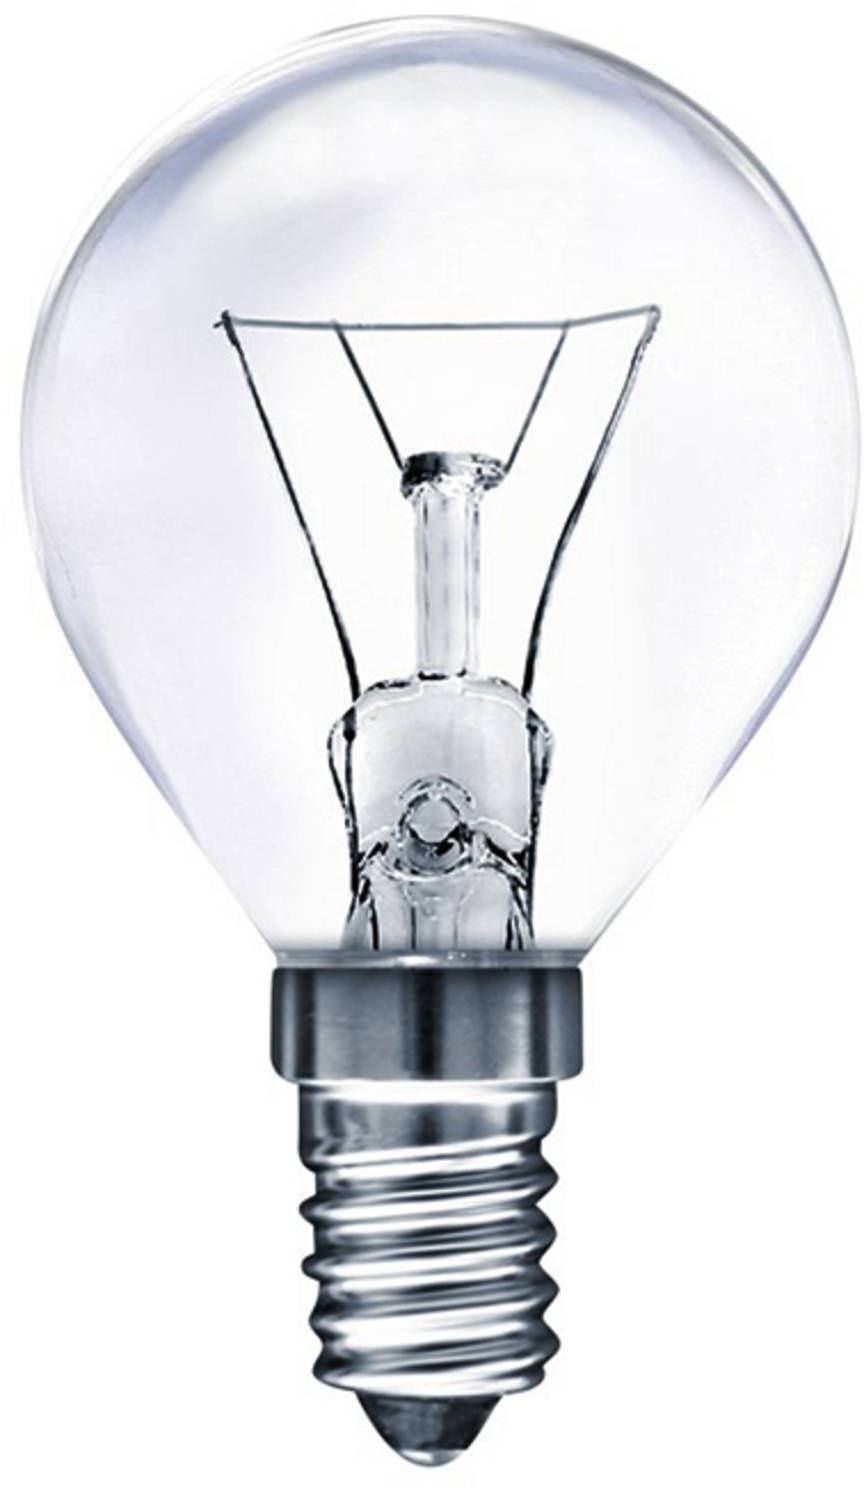 Müller-Licht E14 25 W (25W) oven golf ball bulb, warm-white